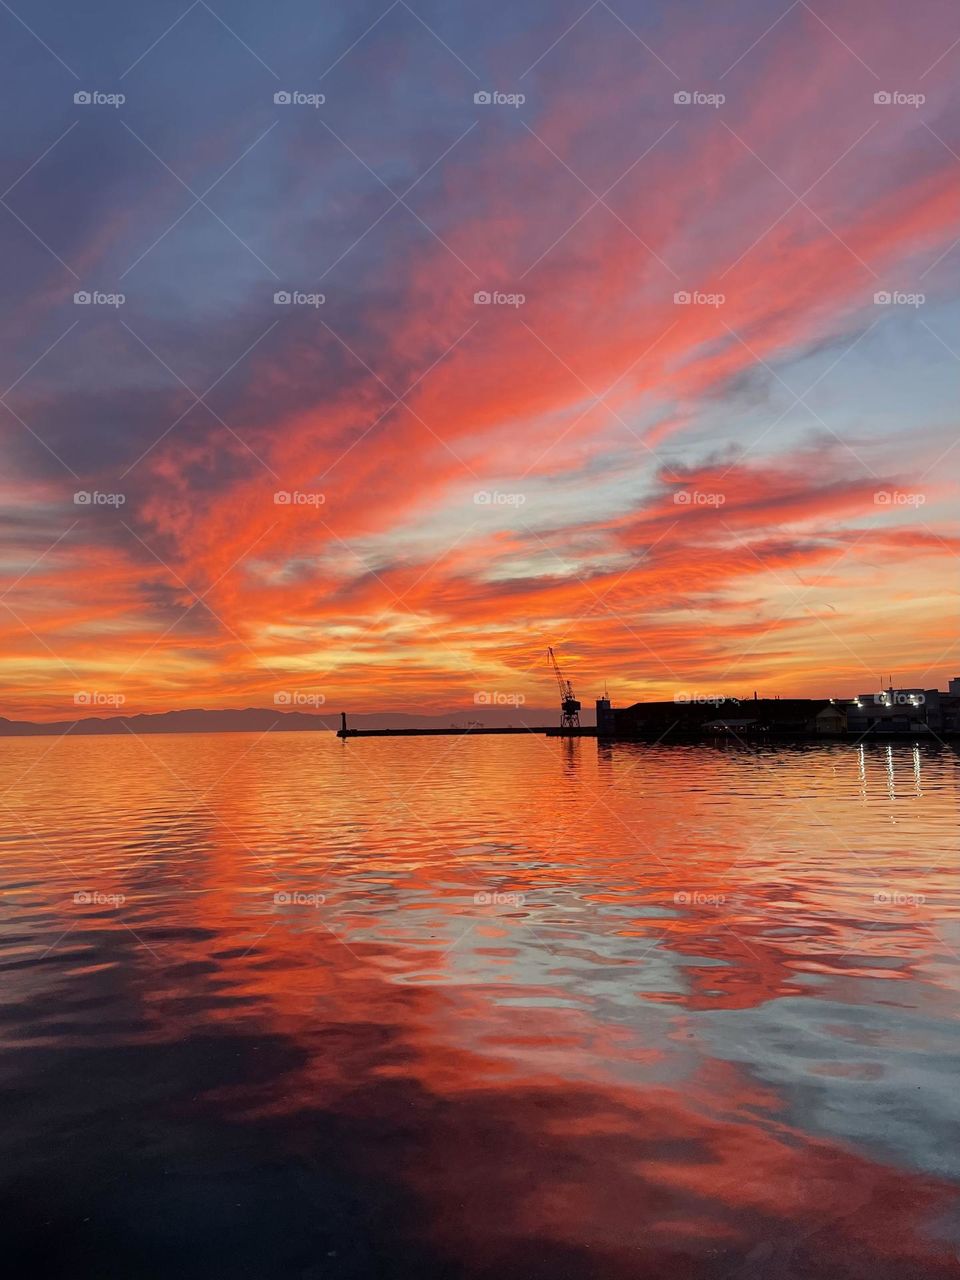 Sunset at the seaside,Thessaloniki,Greece 